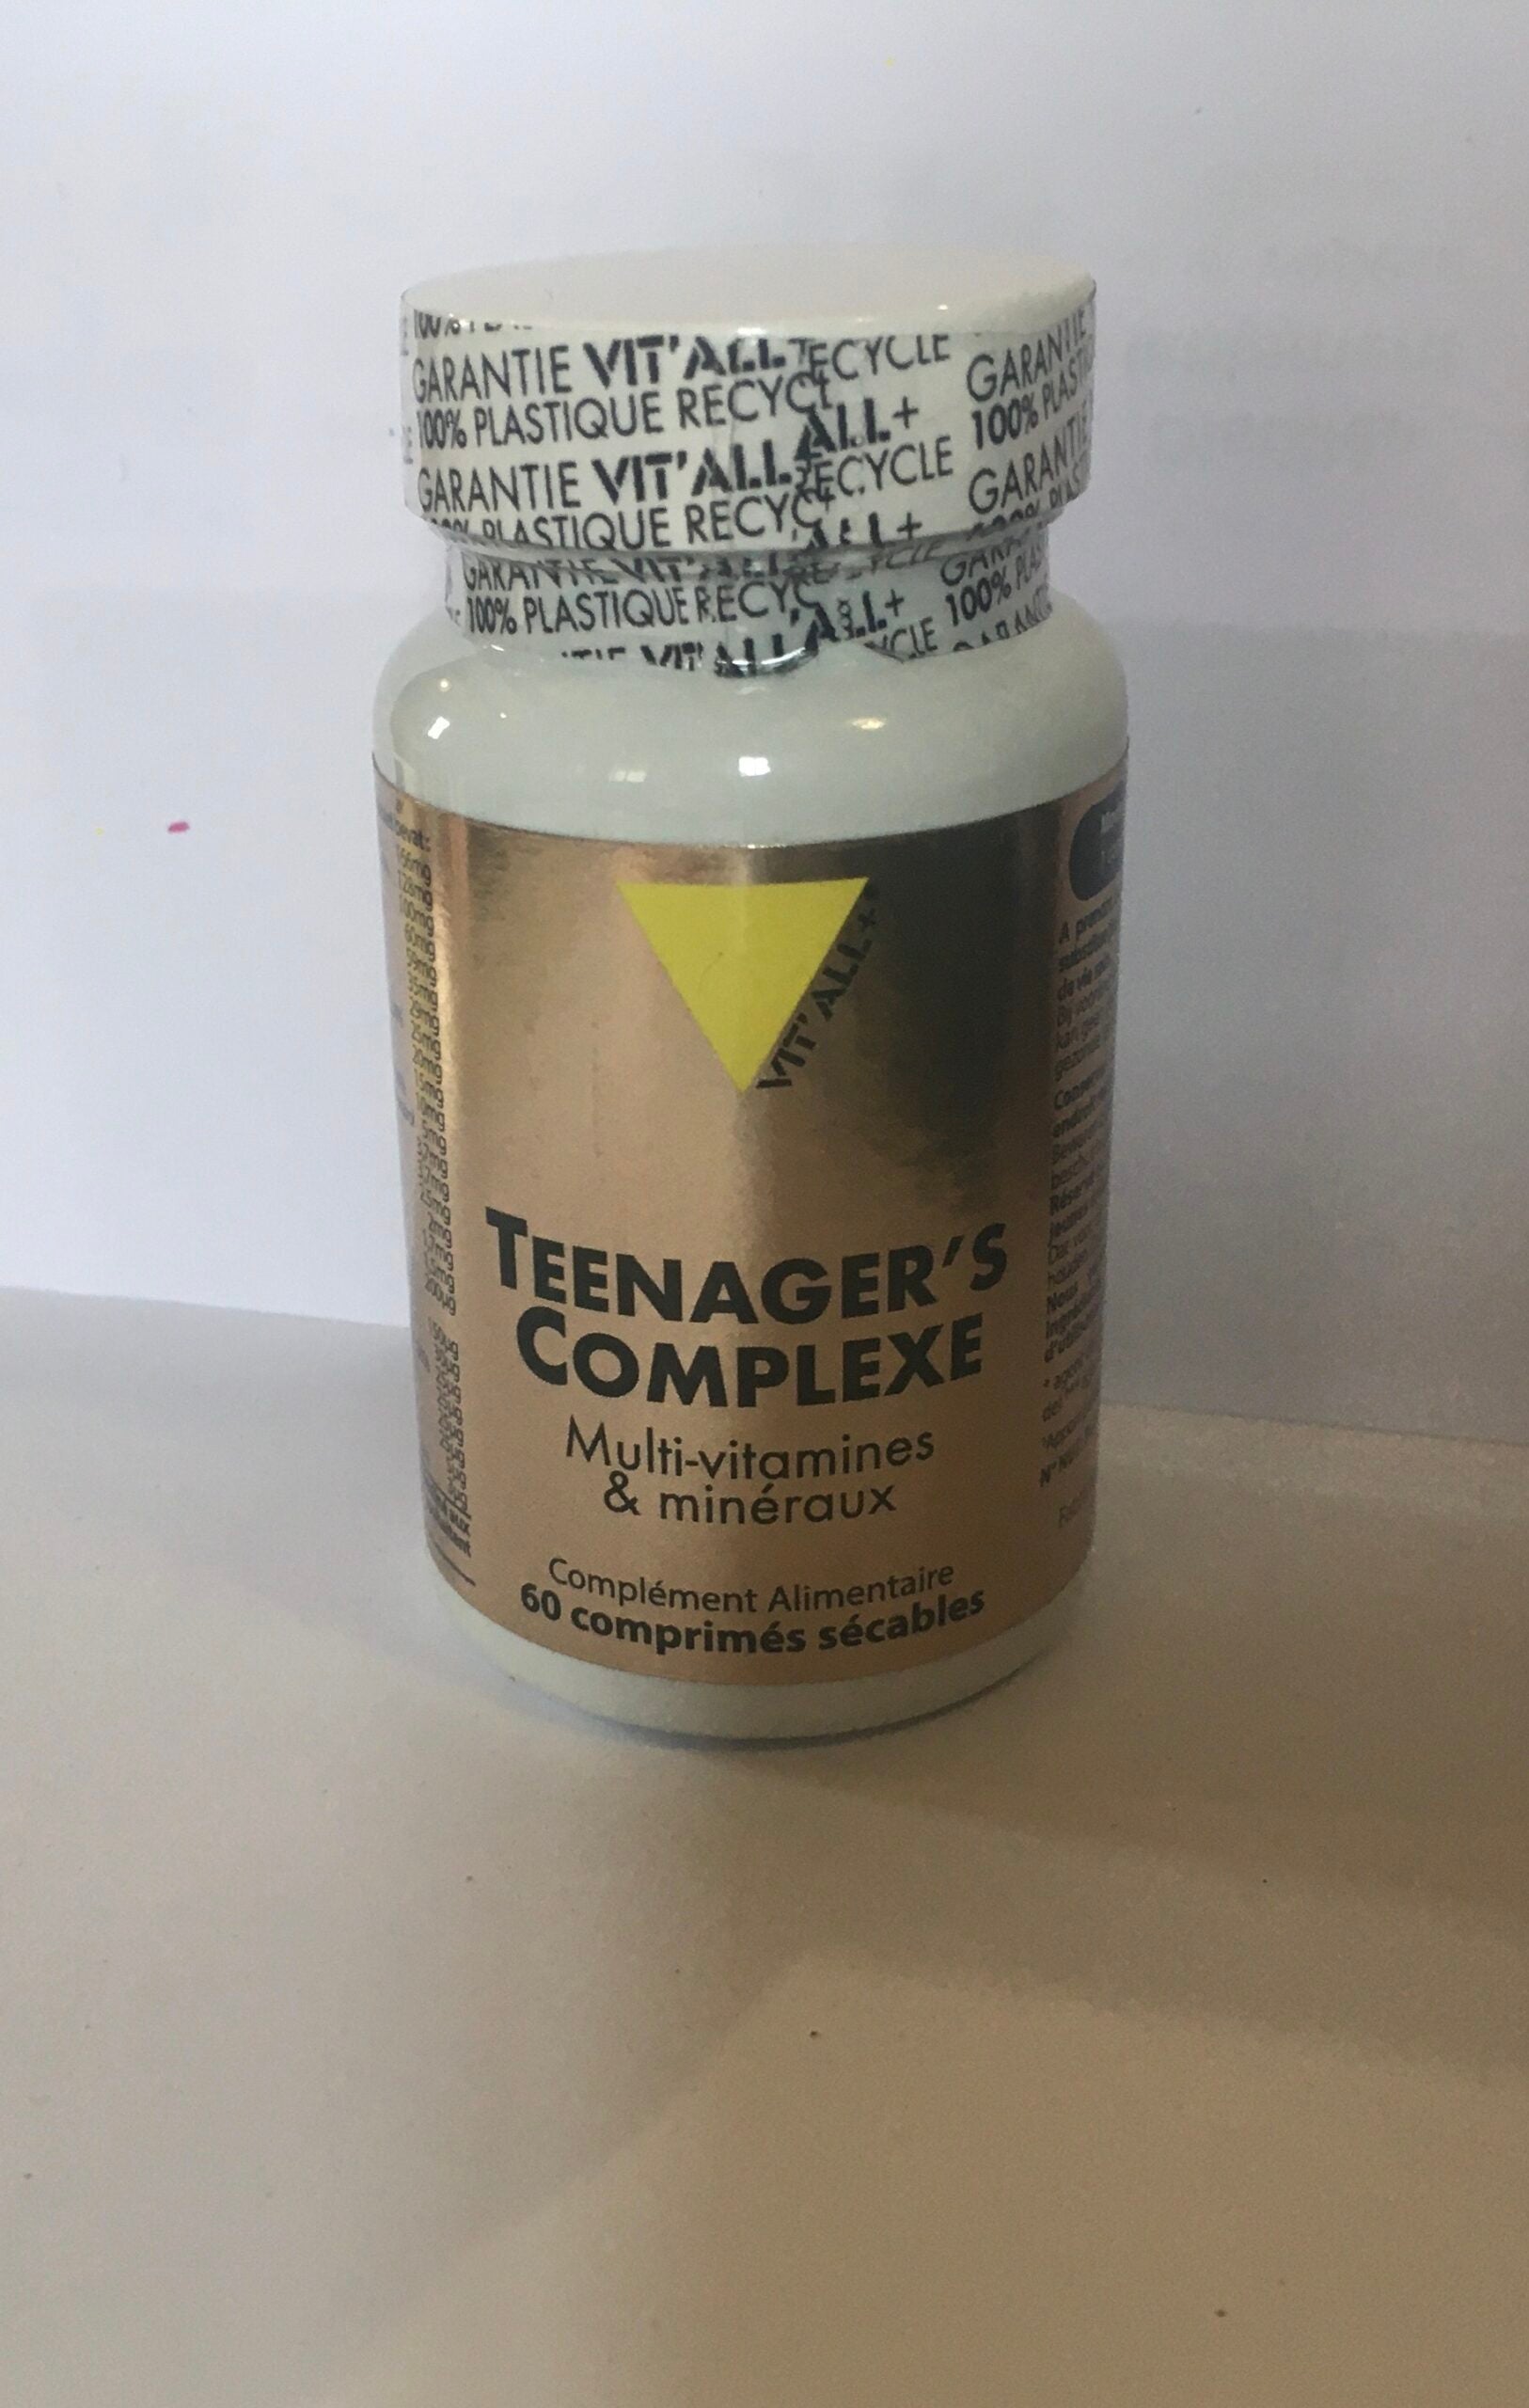 Teenager’s Complexe